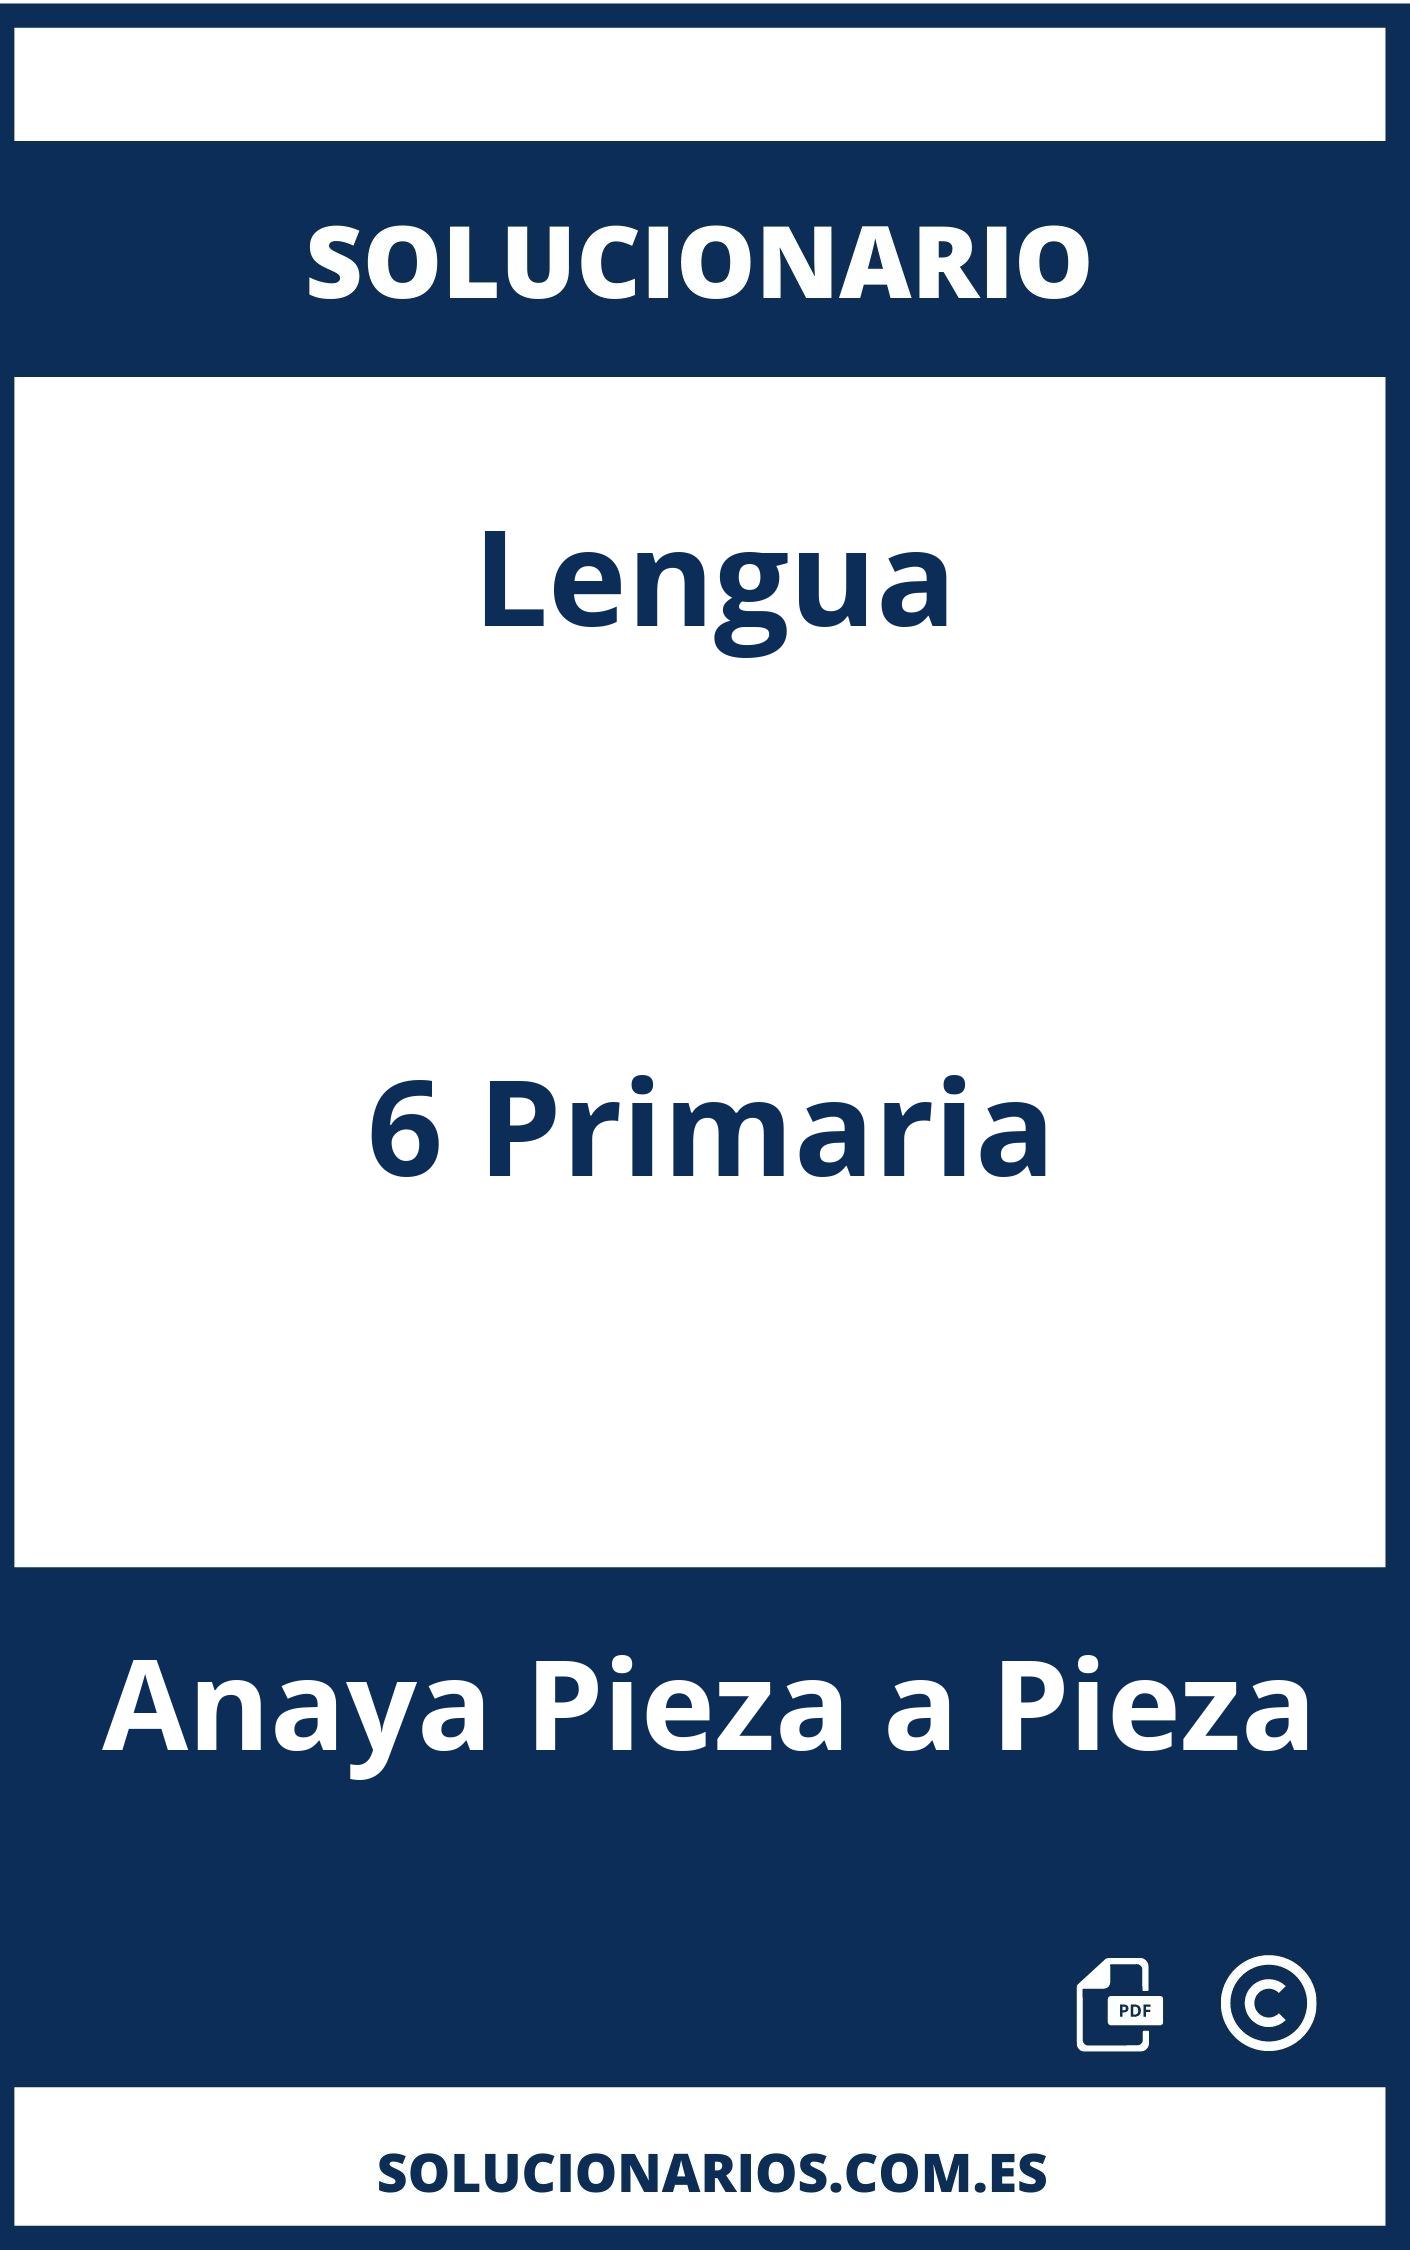 Solucionario Lengua 6 Primaria Anaya Pieza a Pieza